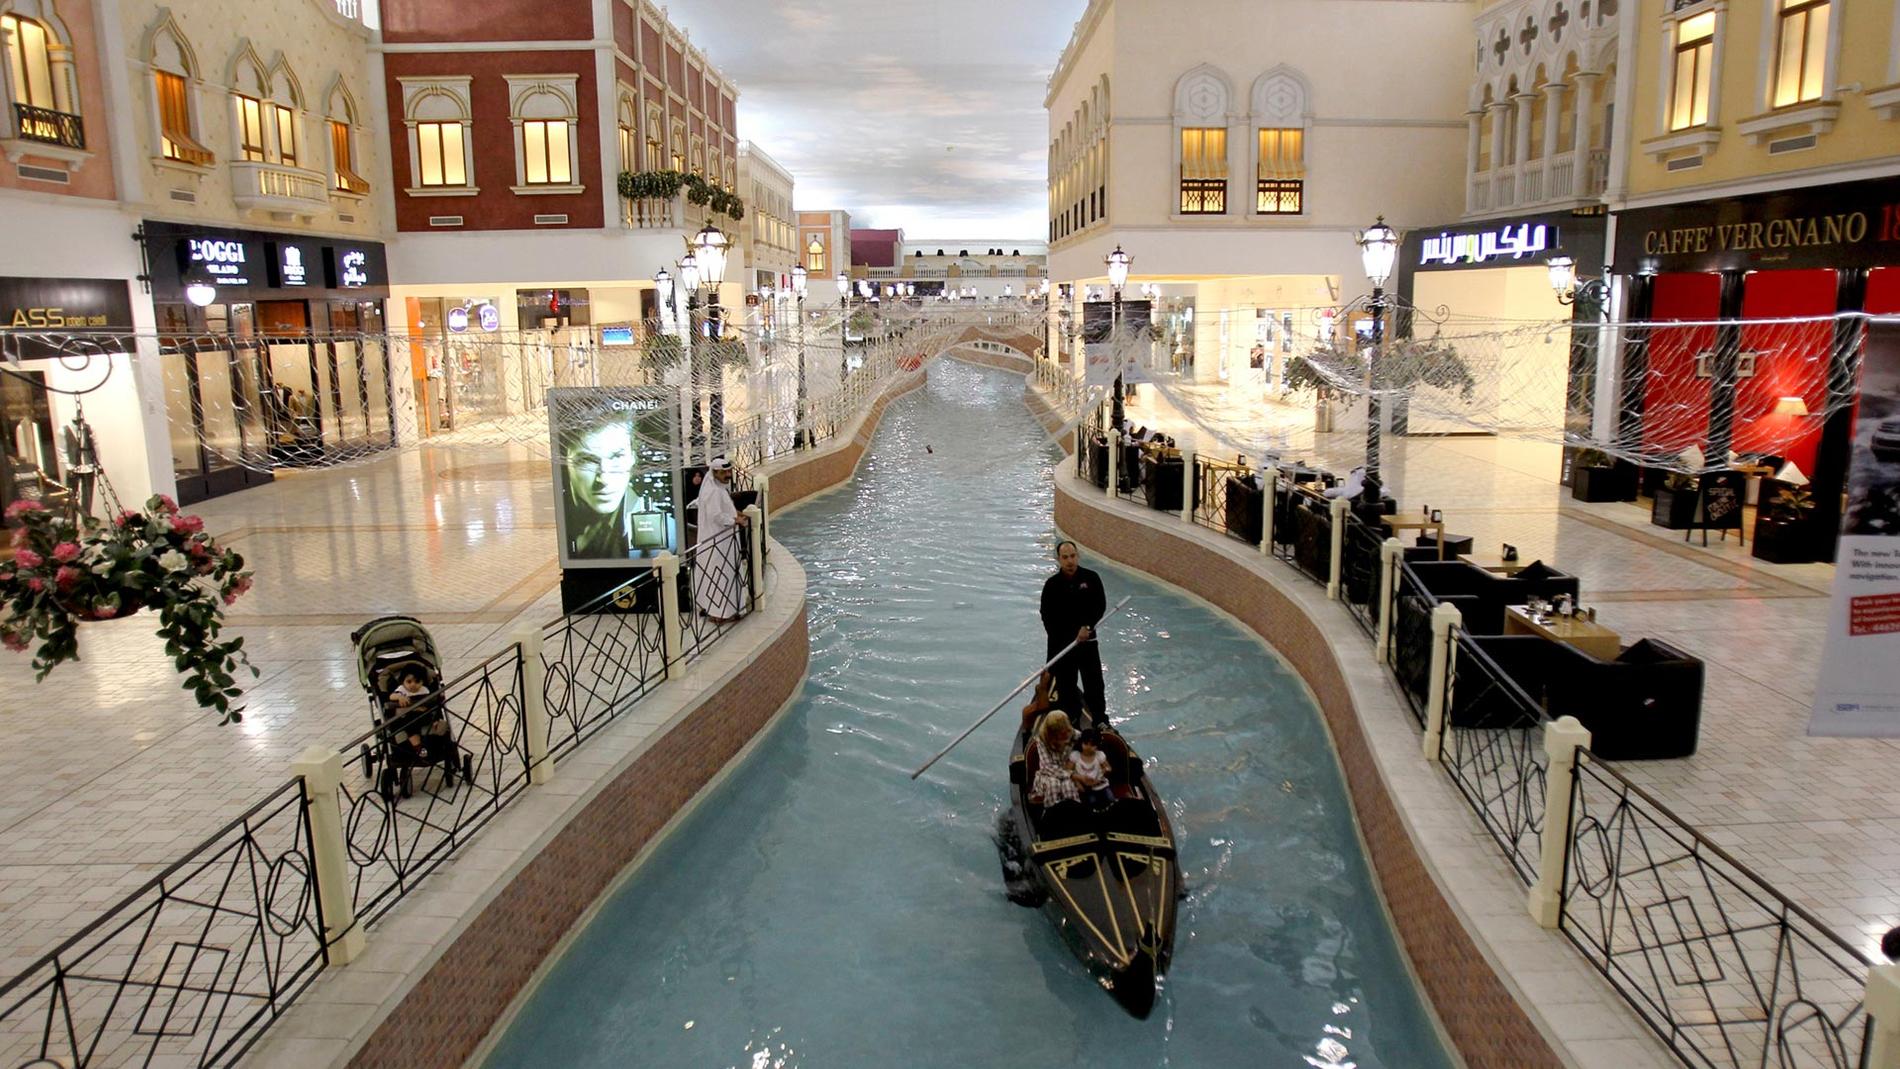 Vilaggio i Doha är ett köpcentrum utöver det vanliga.